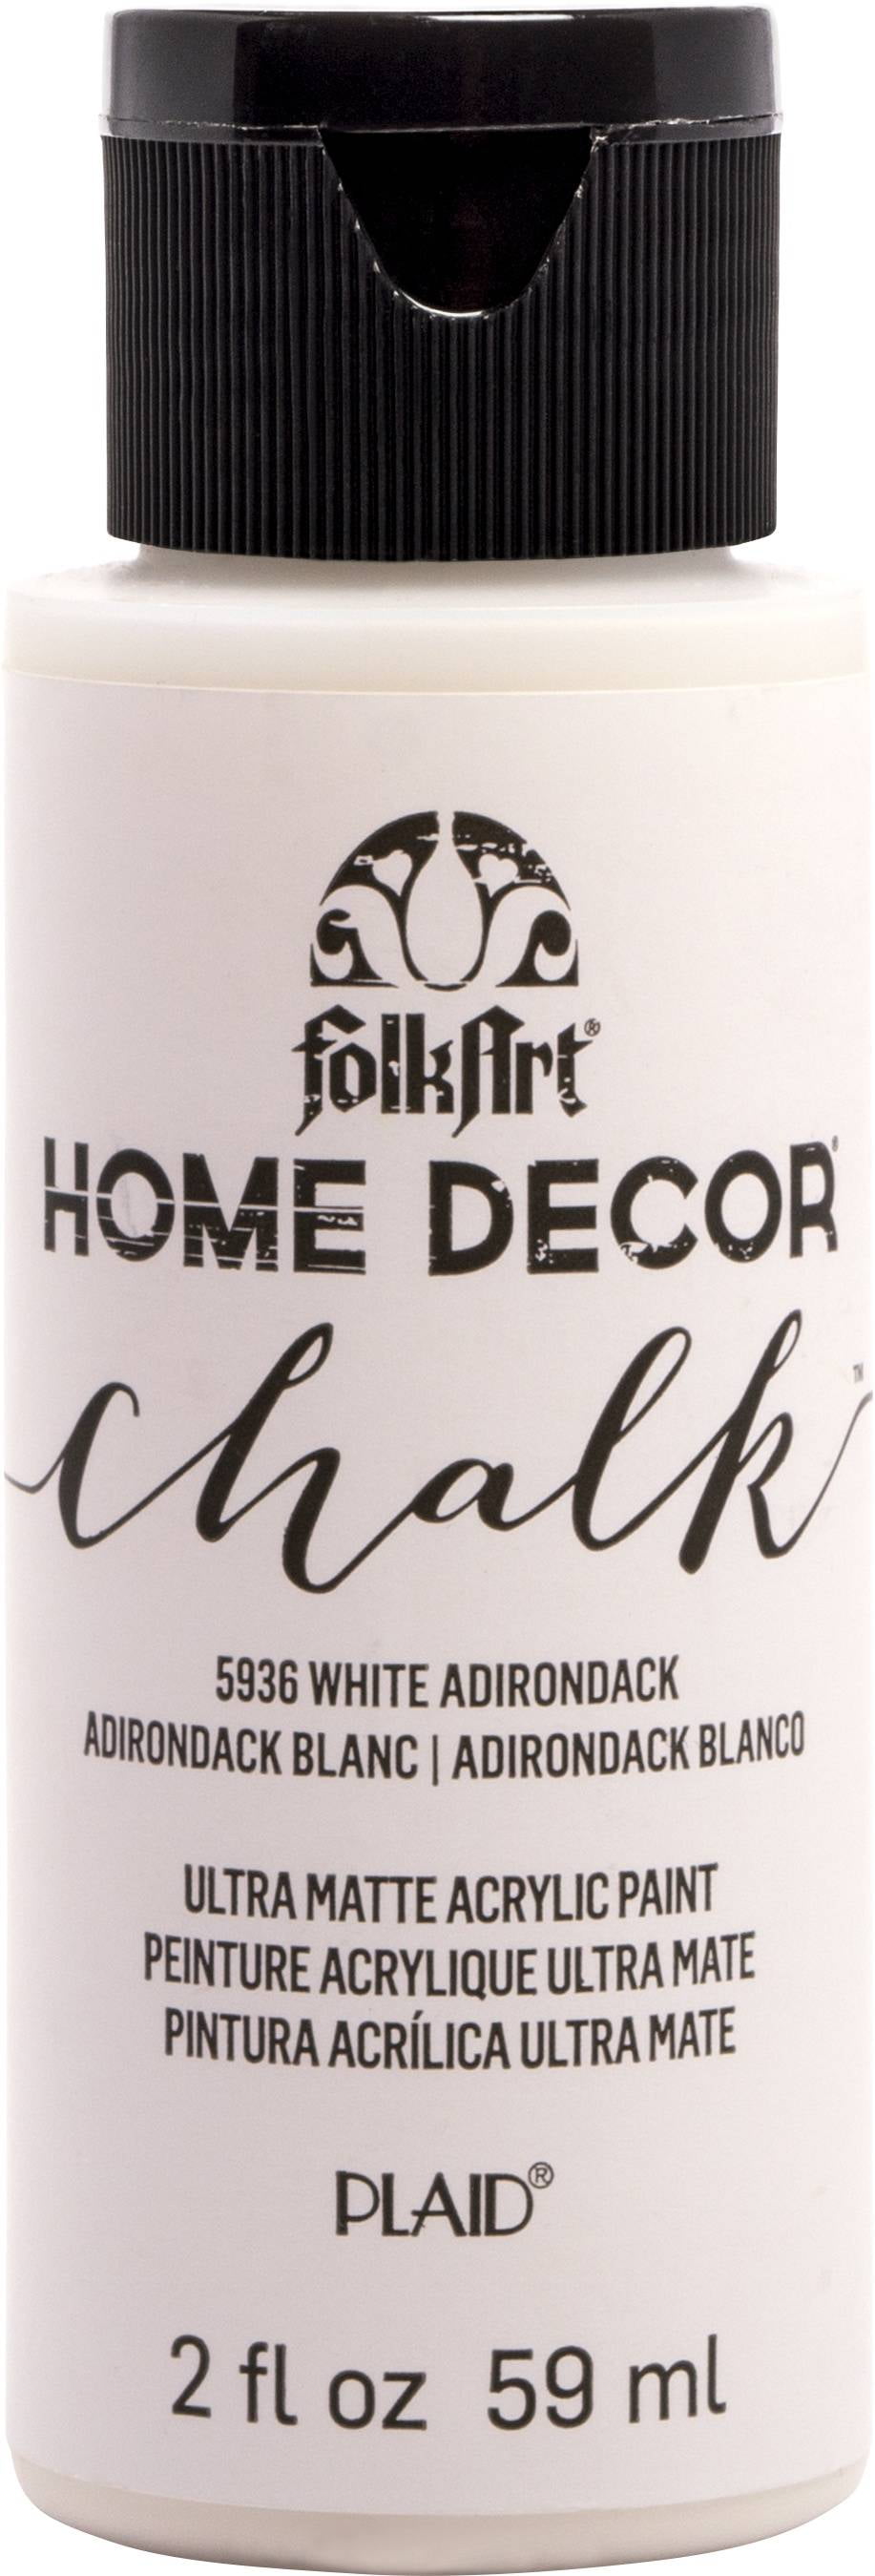 FolkArt Home Decor Chalk Paint 8 oz- White Adirondack